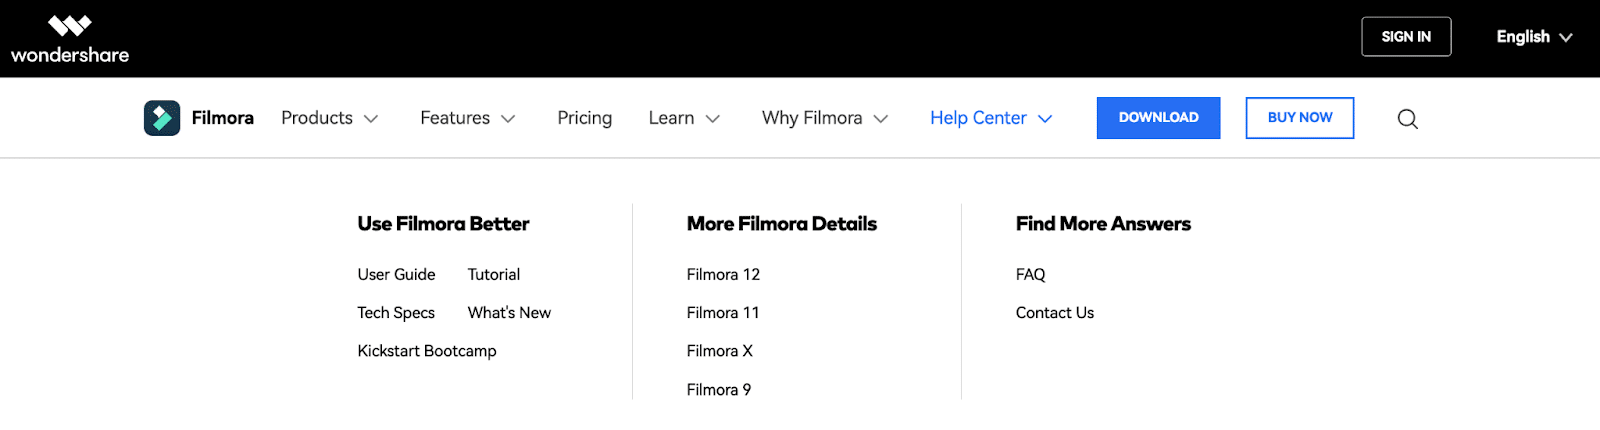 Filmora customer support